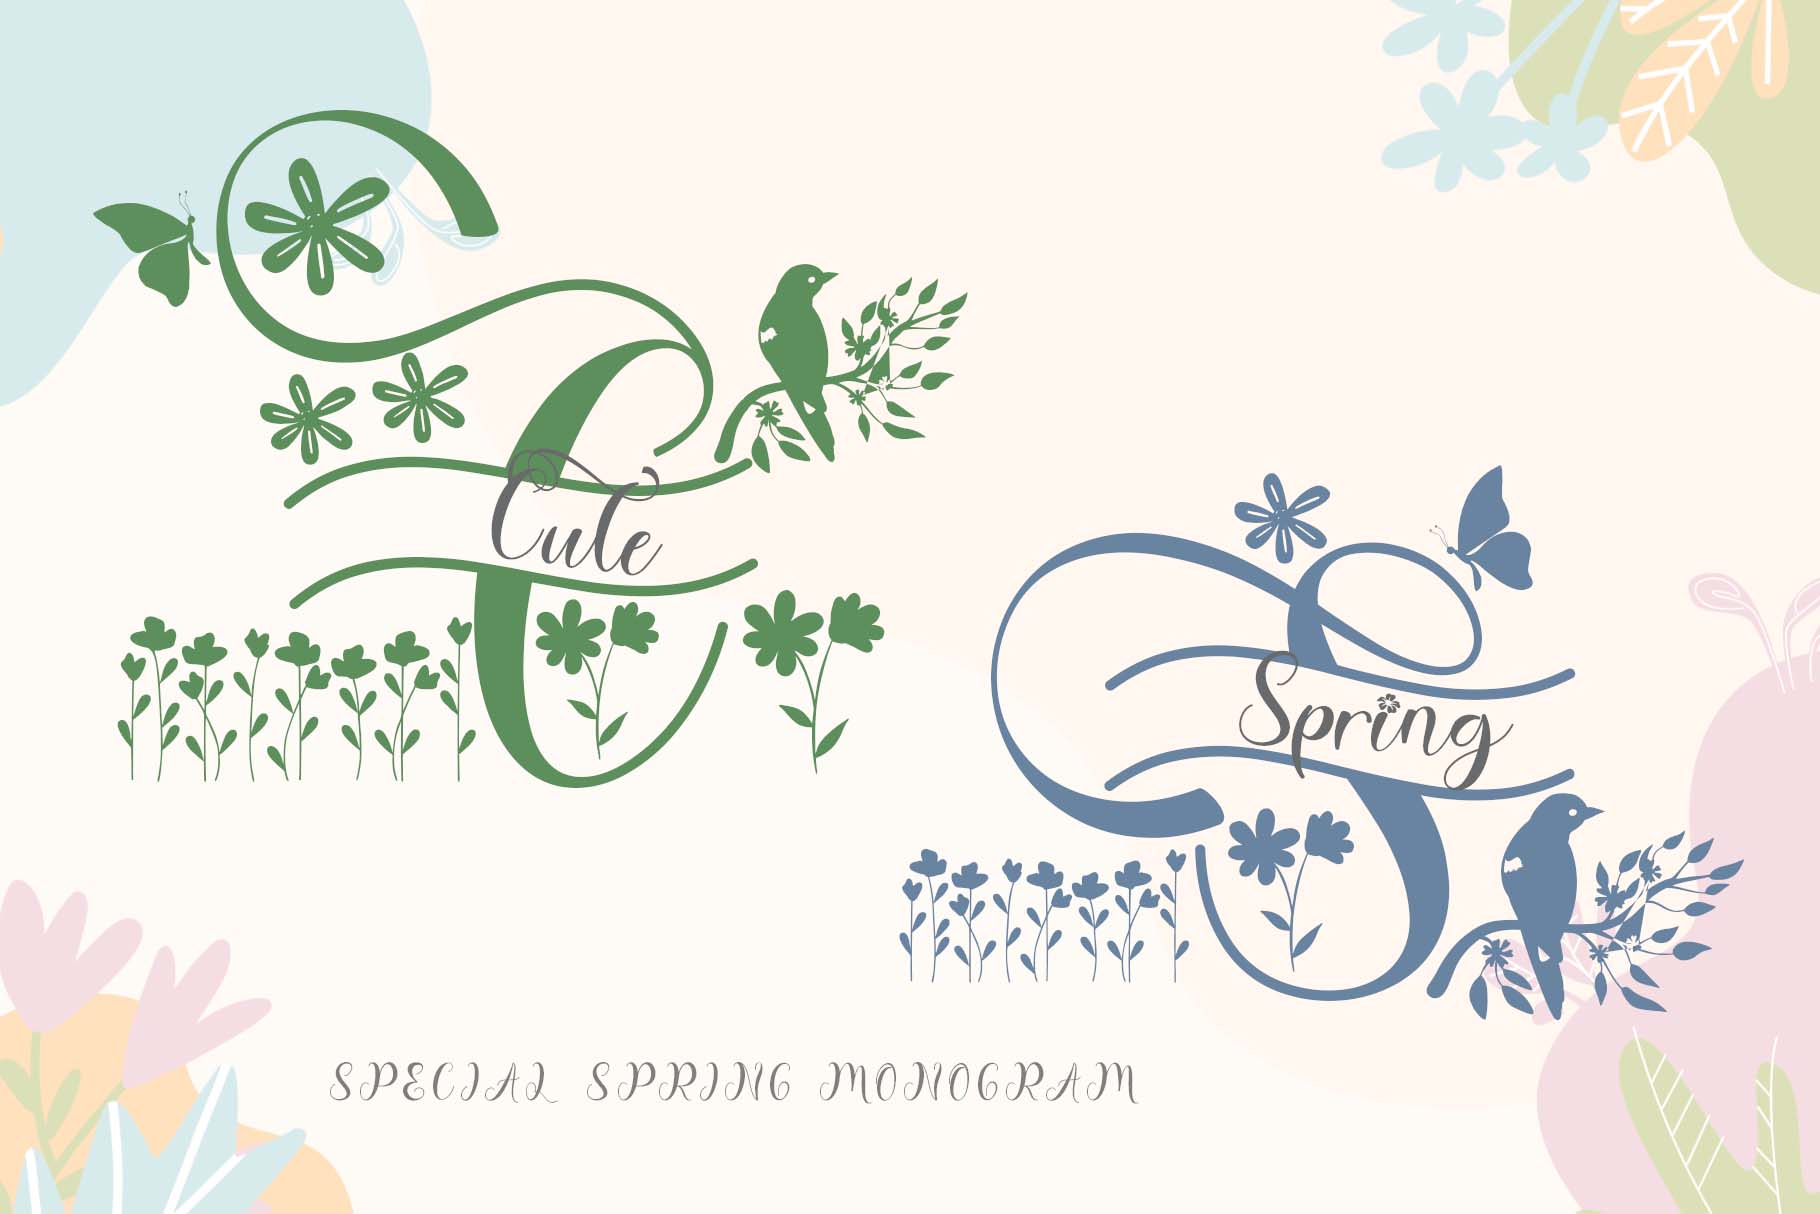 Cute Spring Monogram